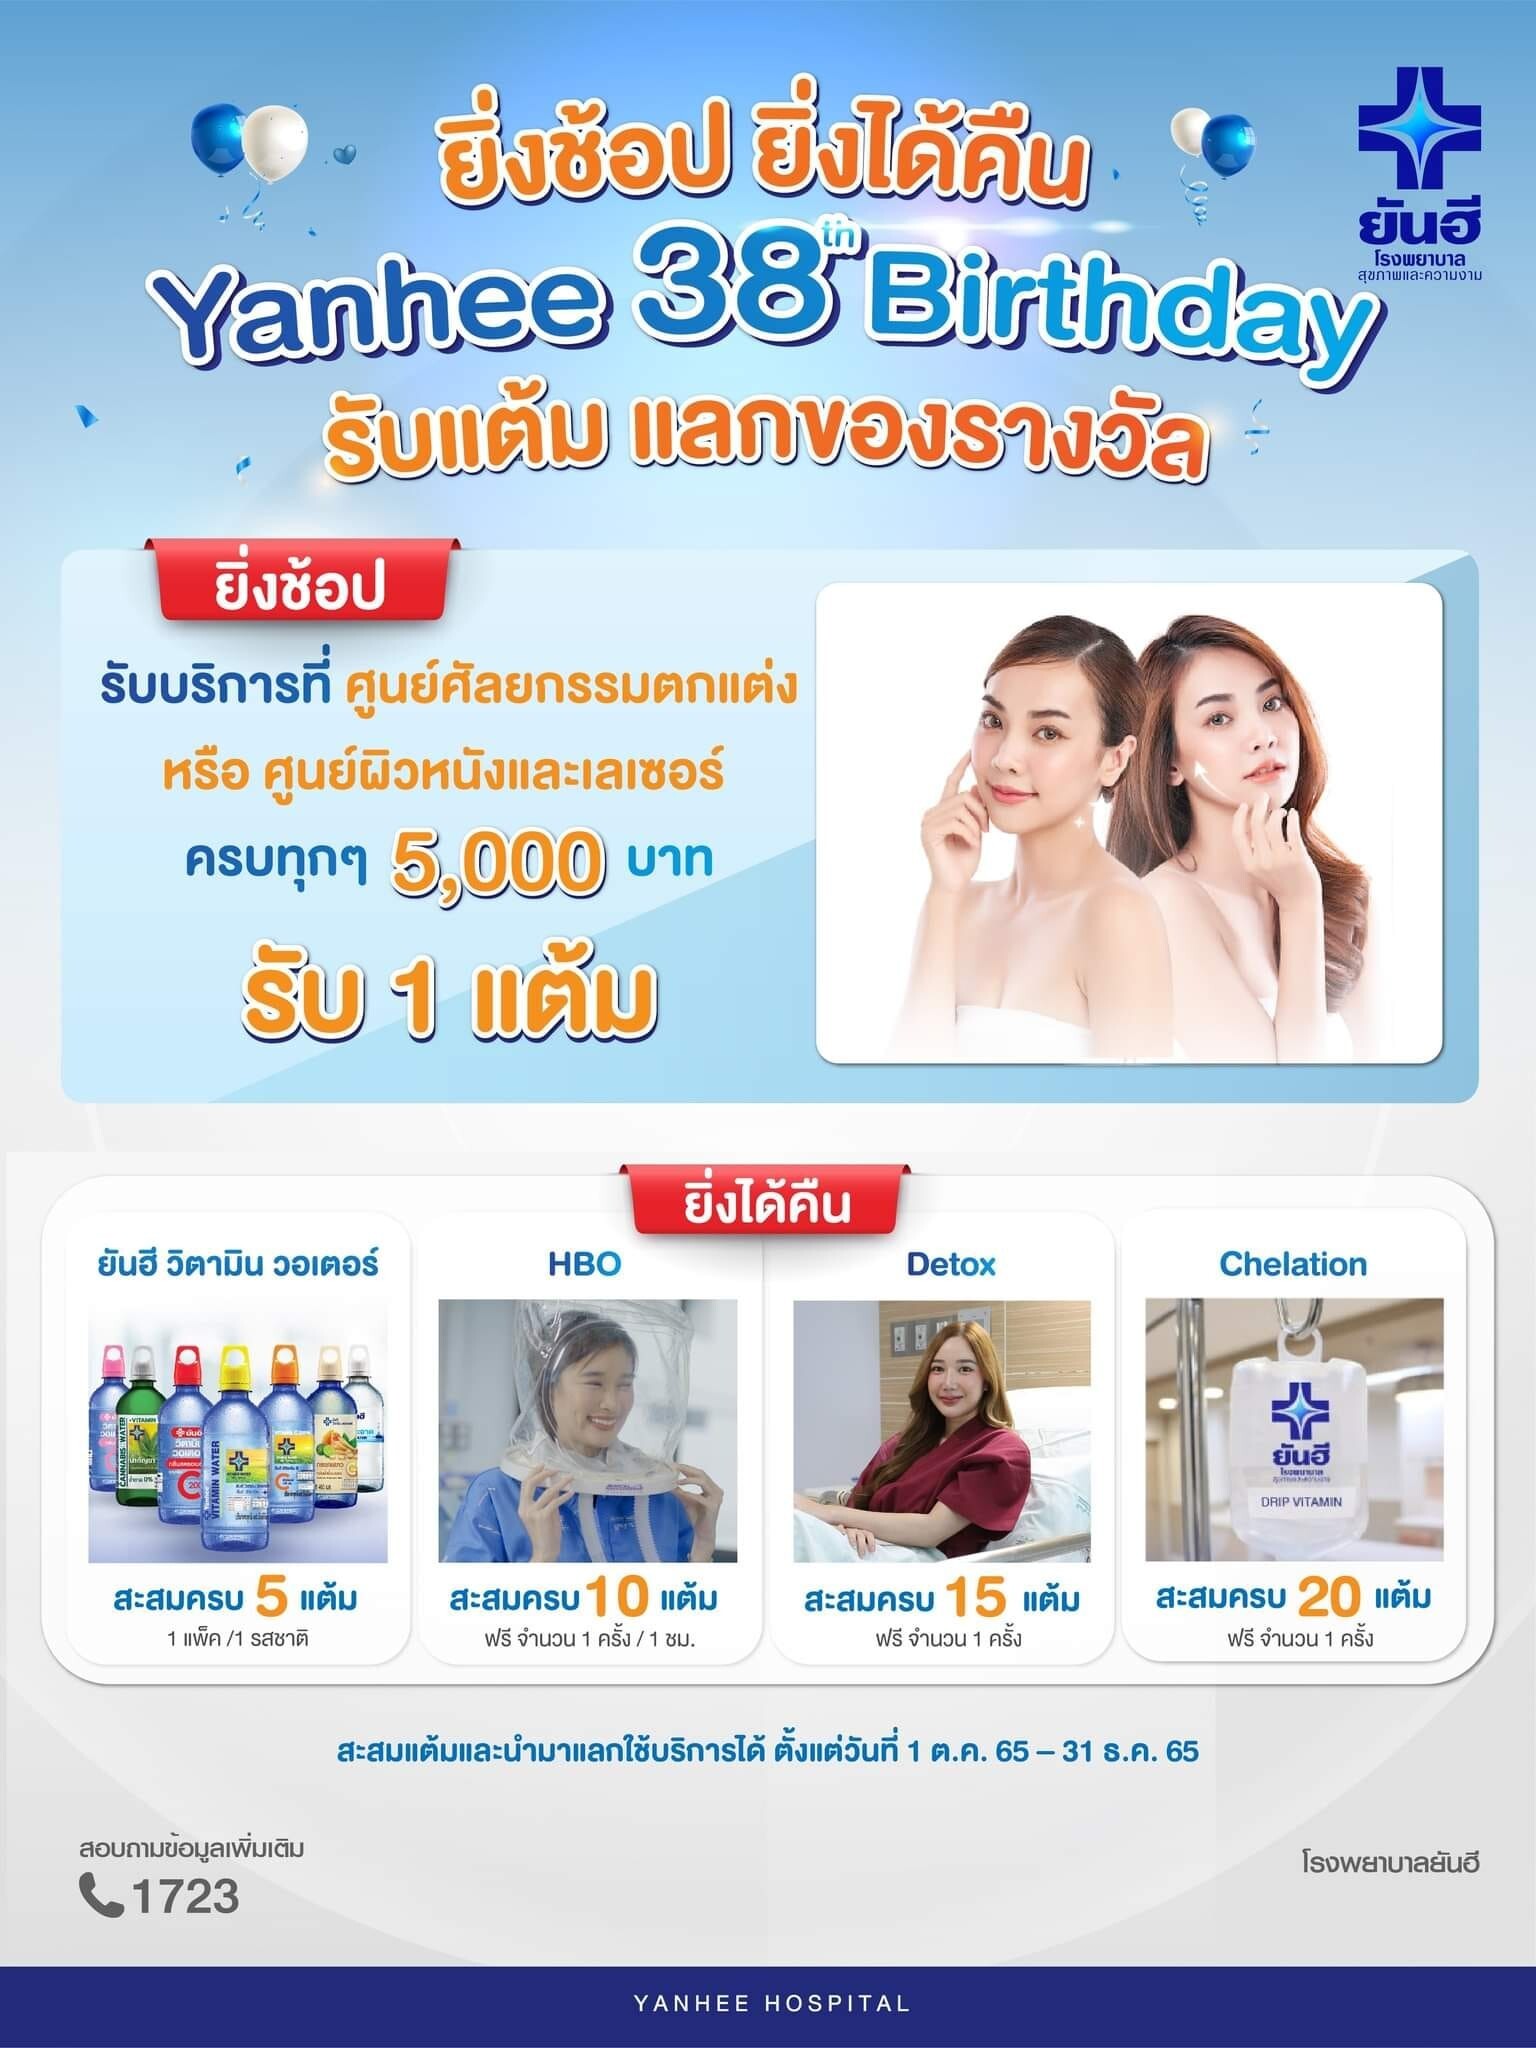 38 ปียันฮี จัดโปรคืนกำไร สุดปัง !! "Yanhee 38th Birthday ยิ่งช้อป ยิ่งได้คืน รับแต้มแลกของรางวัล"